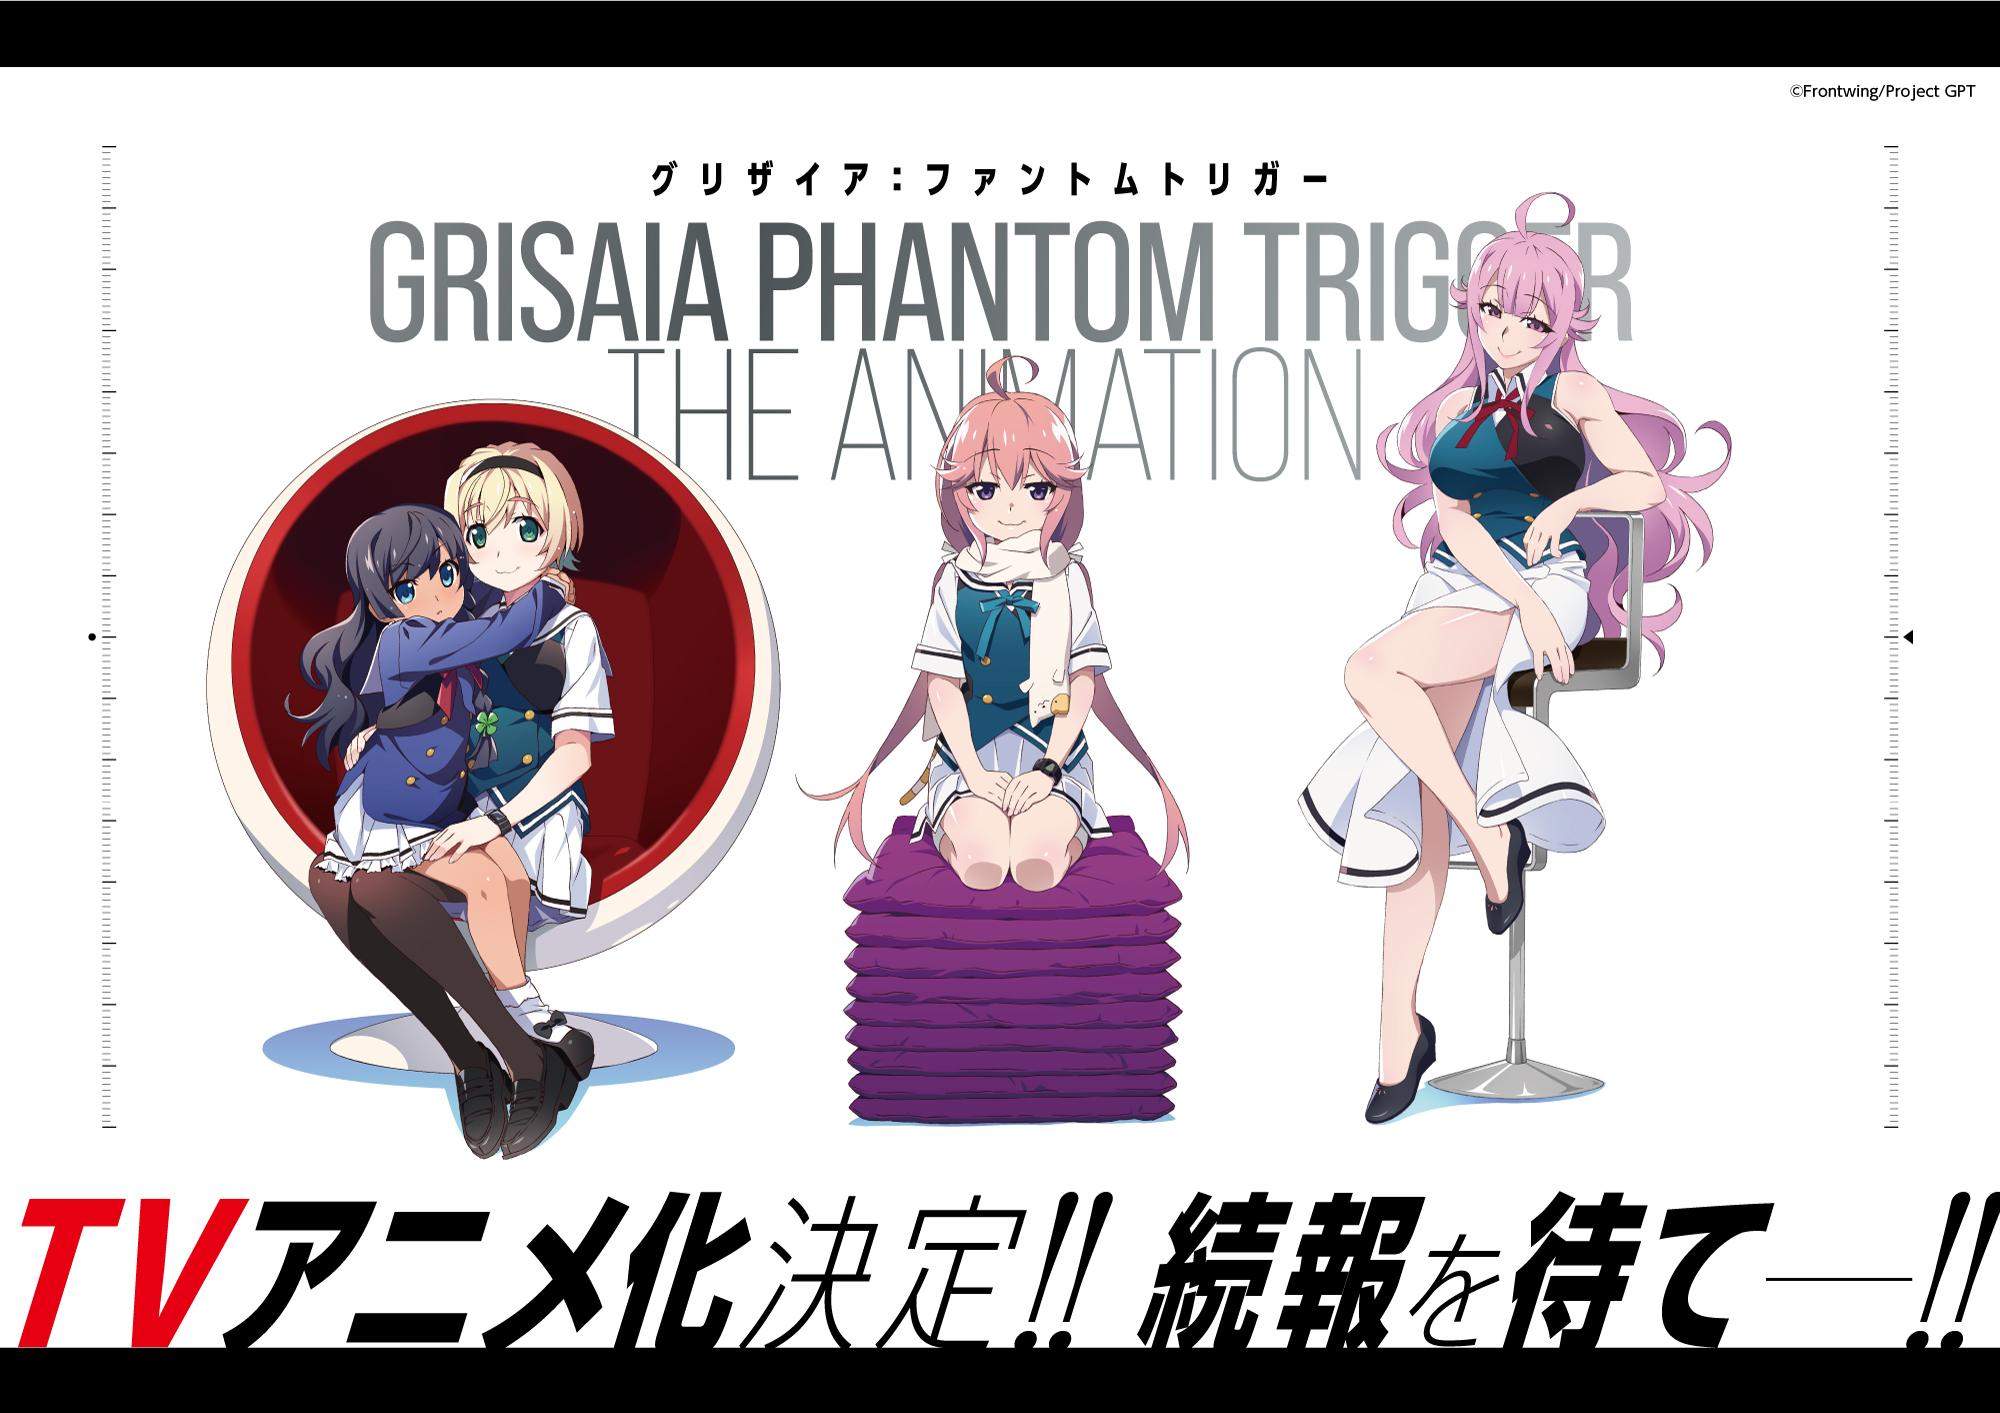 Grisaia: Phantom Trigger